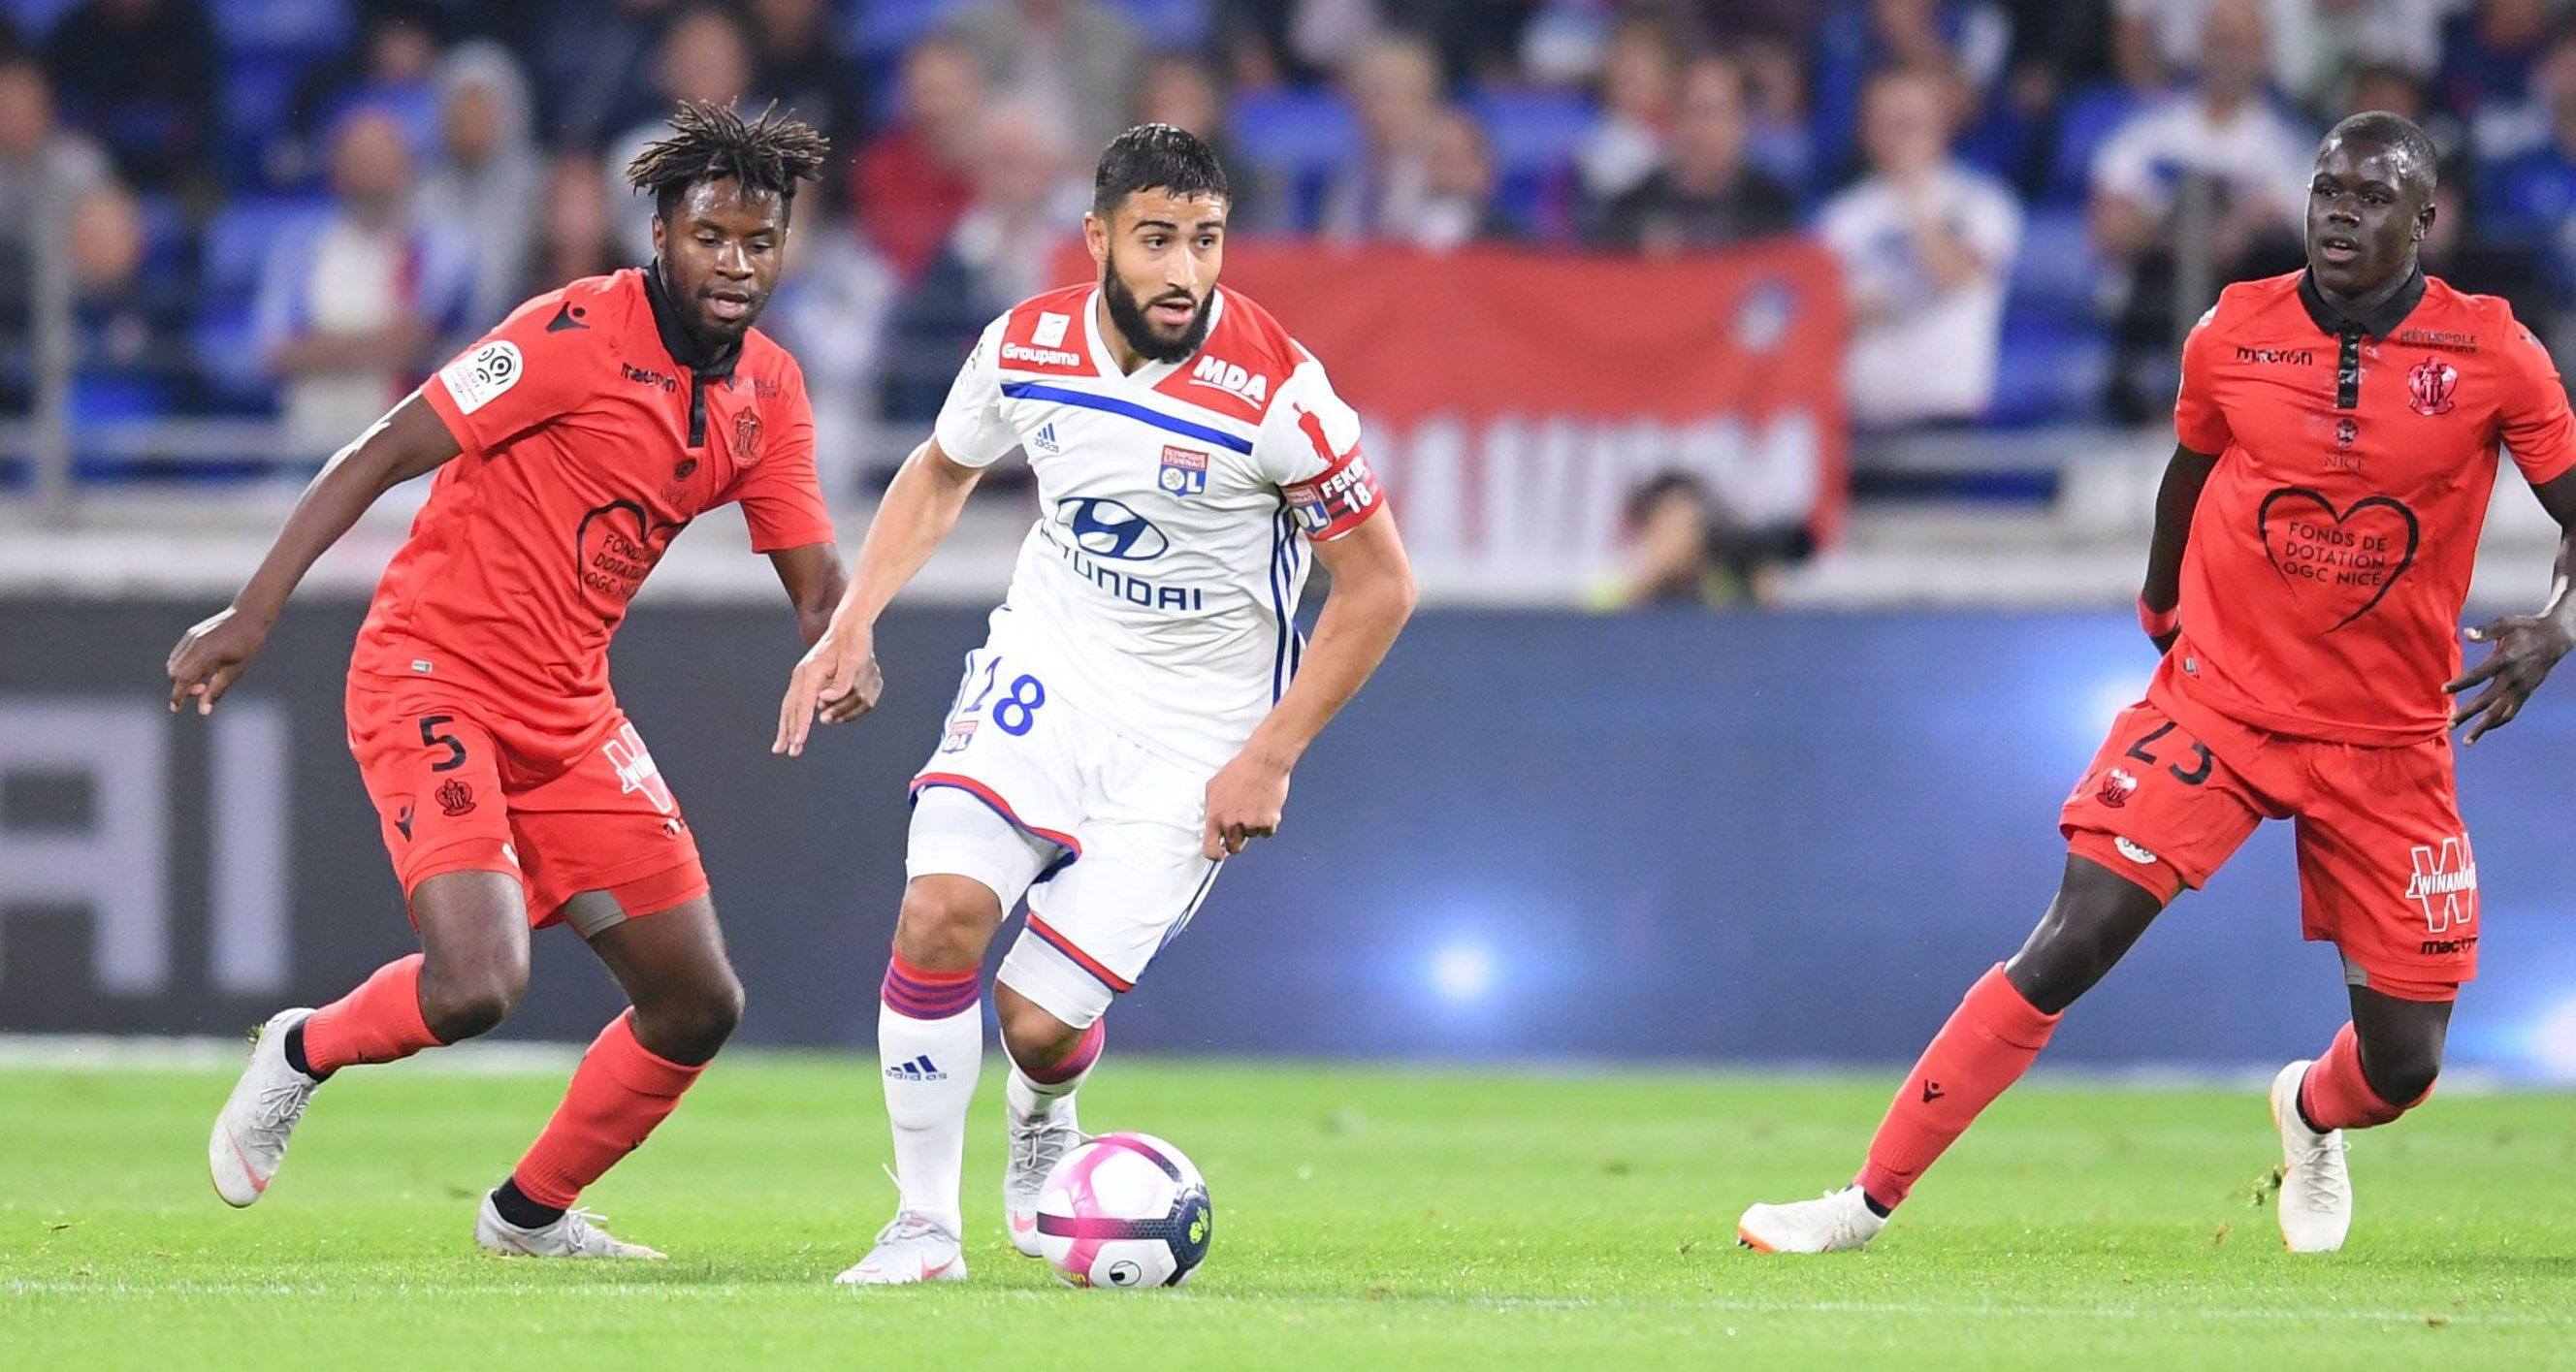 Một kết quả hòa có lẽ sẽ là đẹp cho cả đôi bên Olympique Nimes và Olympique Lyon trong trận đấu cuối cùng của mùa giải.